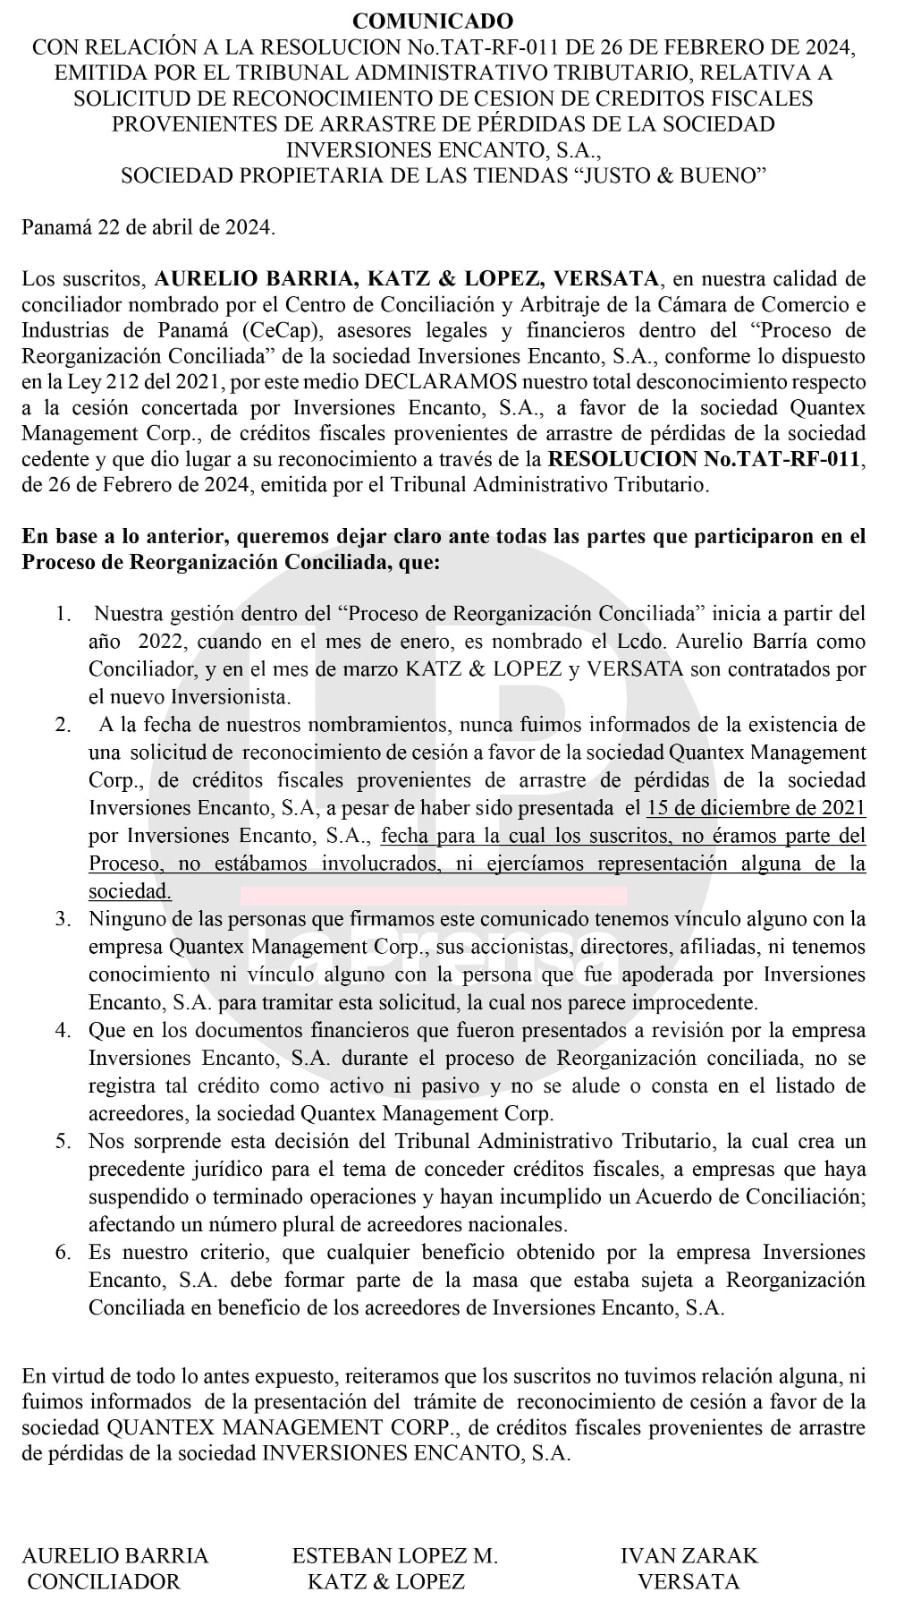 Comunicado de Aurelio Barría, Esteban López e Iván Zarak, sobre el proceso de reorganización conciliada de Justo y Bueno y la decisión del TAT.